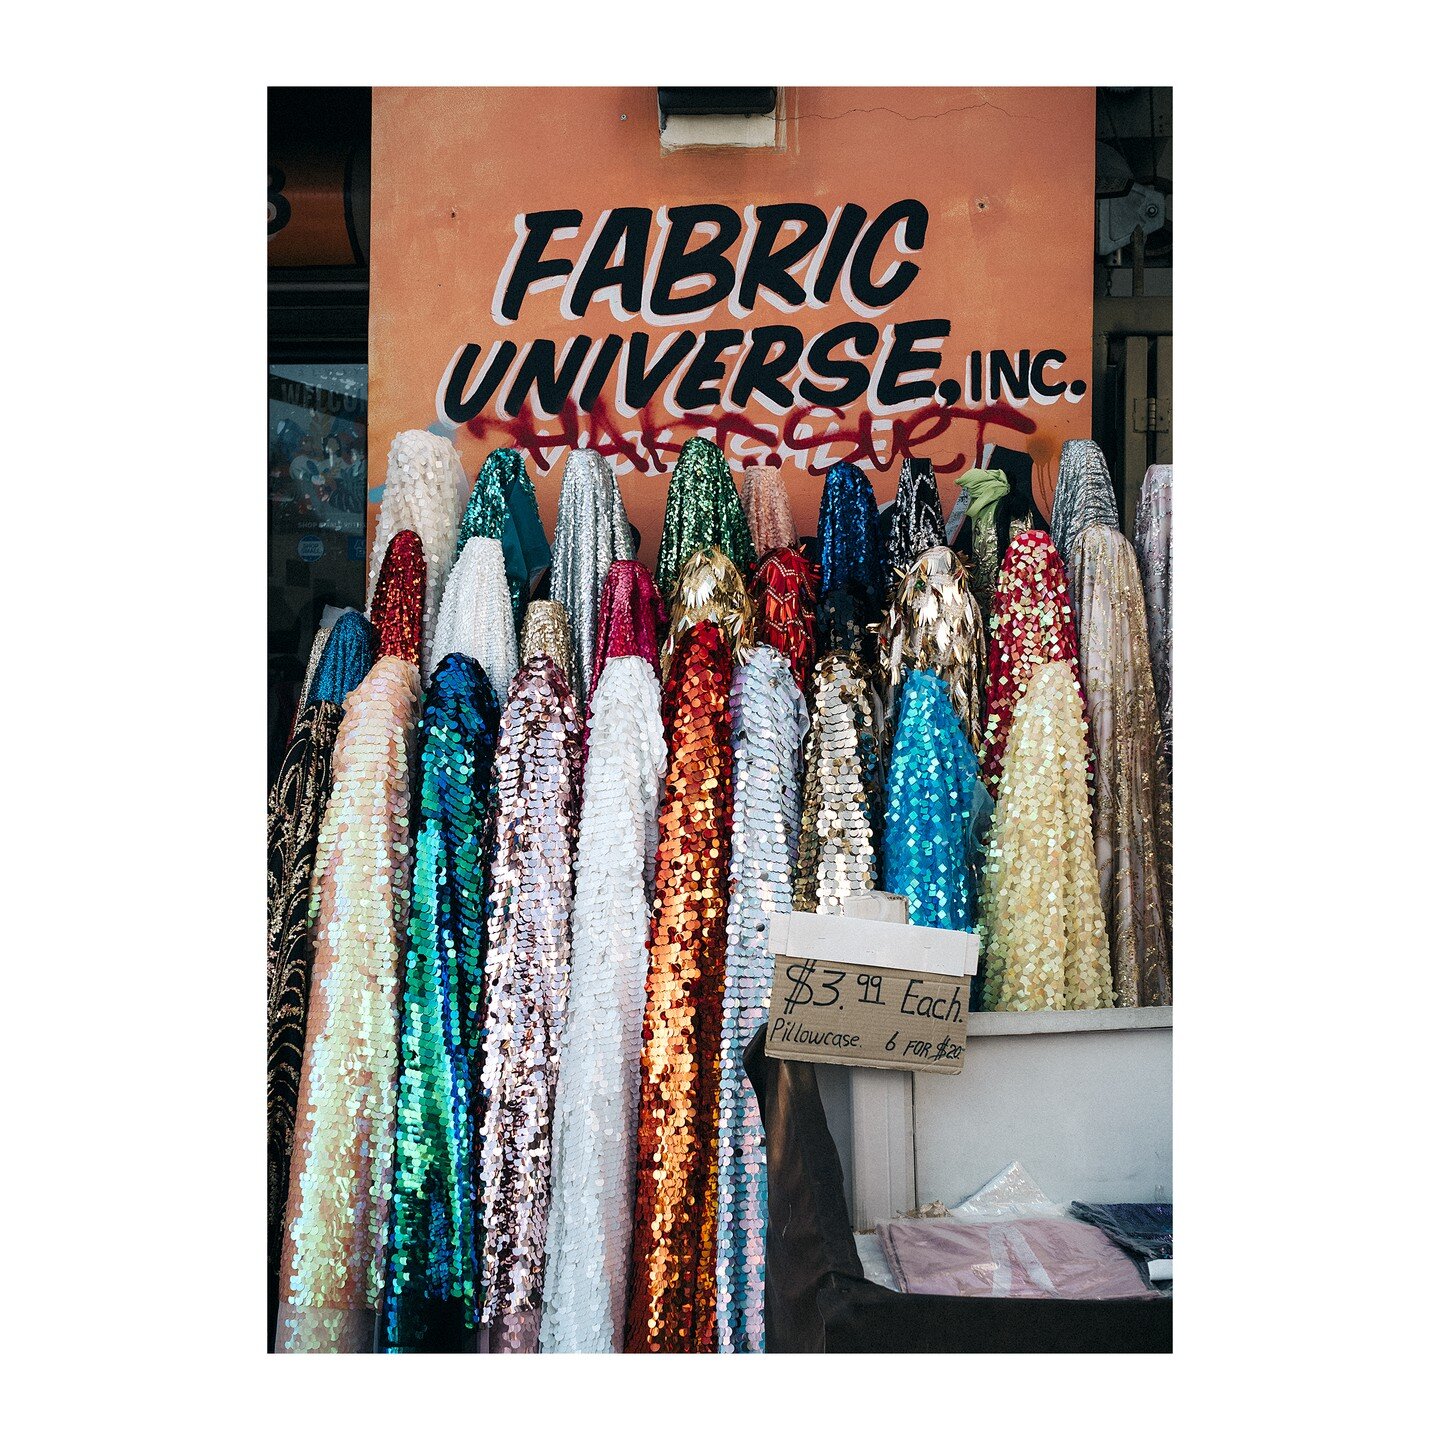 #fabric 
.
.
.
.
.
.
.
#banalmag #bcncollective #spicollective #streetscenemag #shinyhappystreet #sequins #leica #leicam10 #leicamag #leica #leicastorela